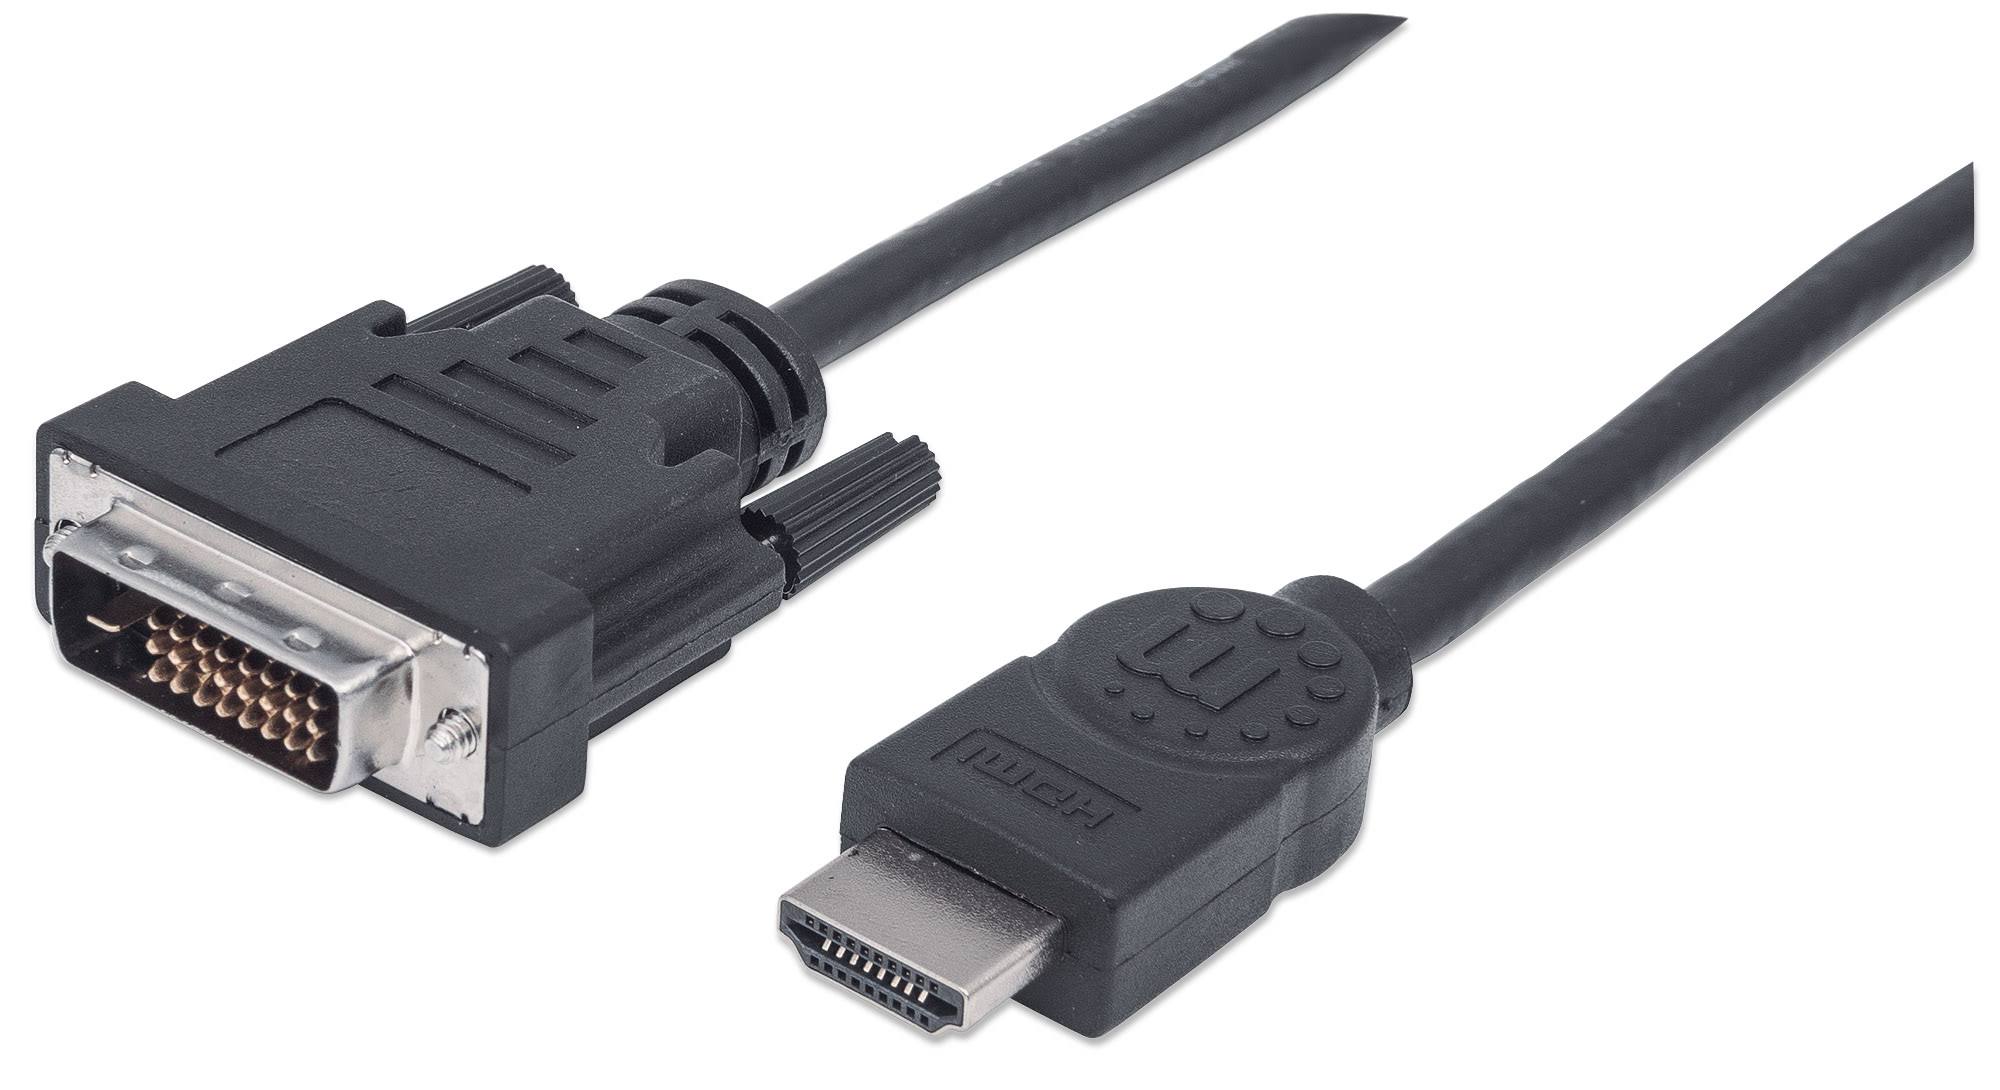 Manhattan Male HDMI to Male DVI Video Cable - 2m, Black